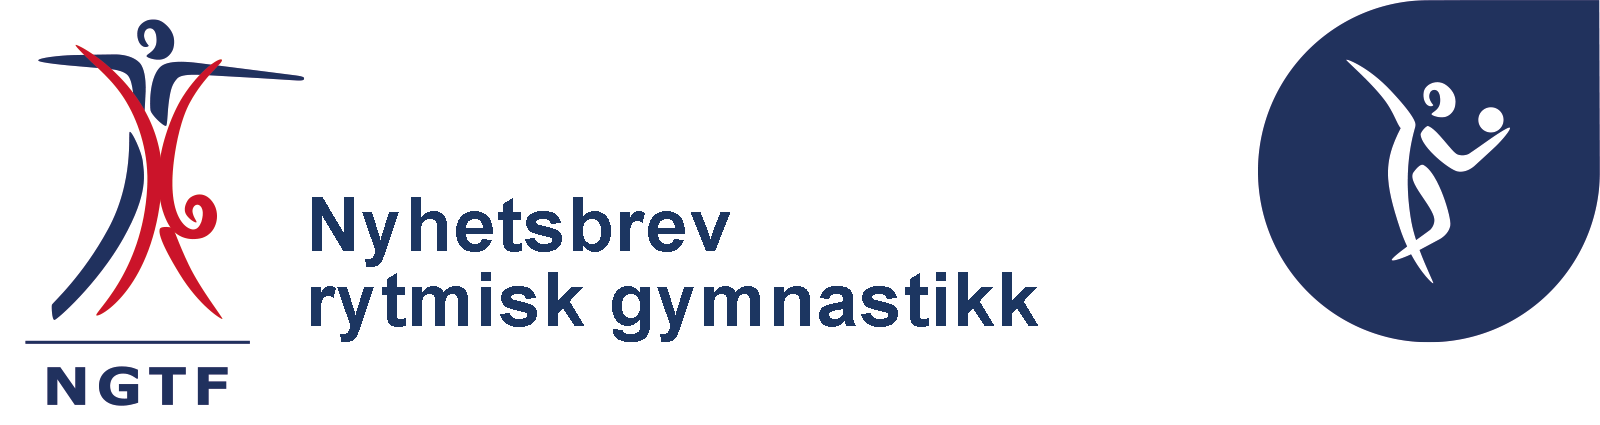 MailPoet nyhetsbrev rytmisk gymnastikk